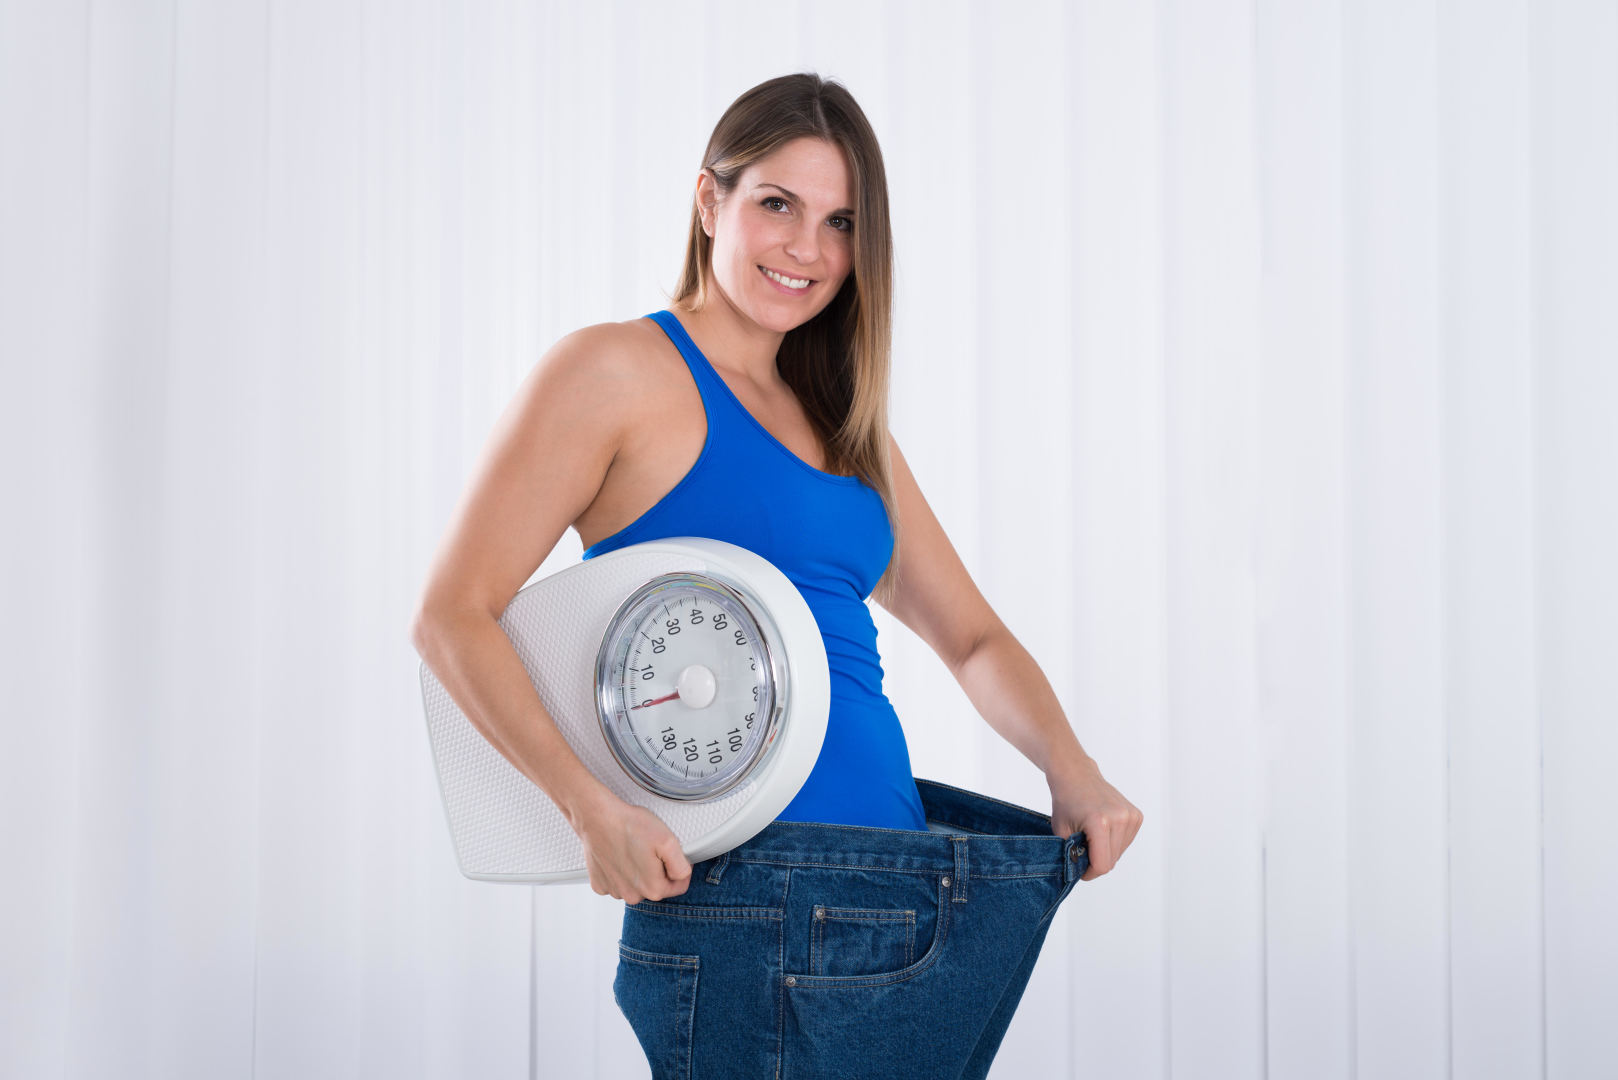 laikotarpis verčia mesti svorį maži paprasti svorio metimo pokyčiai